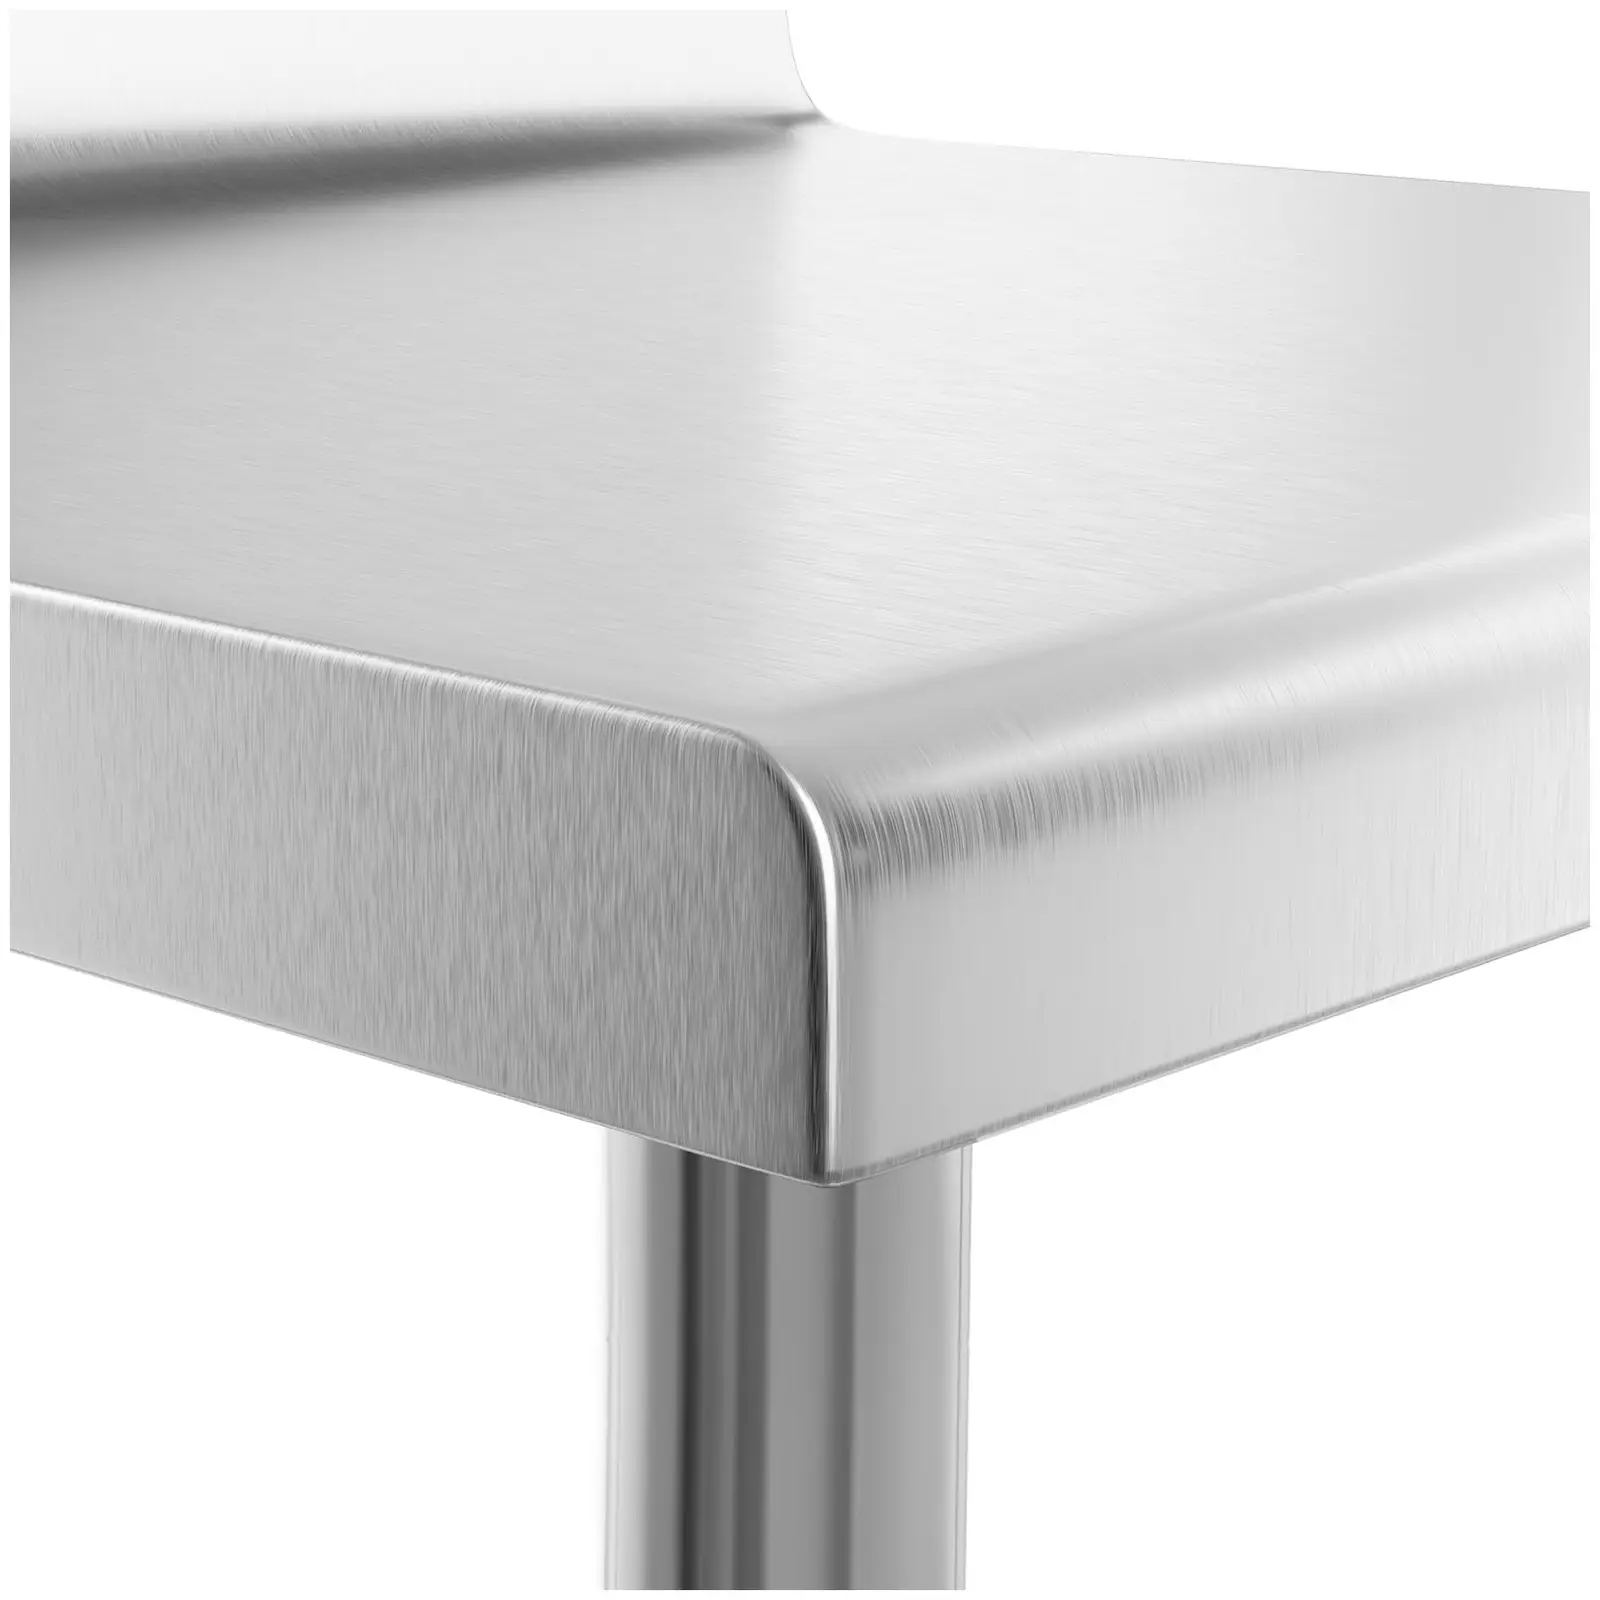 Rozsdamentes acél asztal - 90 x 60 cm - karimával- 210 kg terhelhetőség